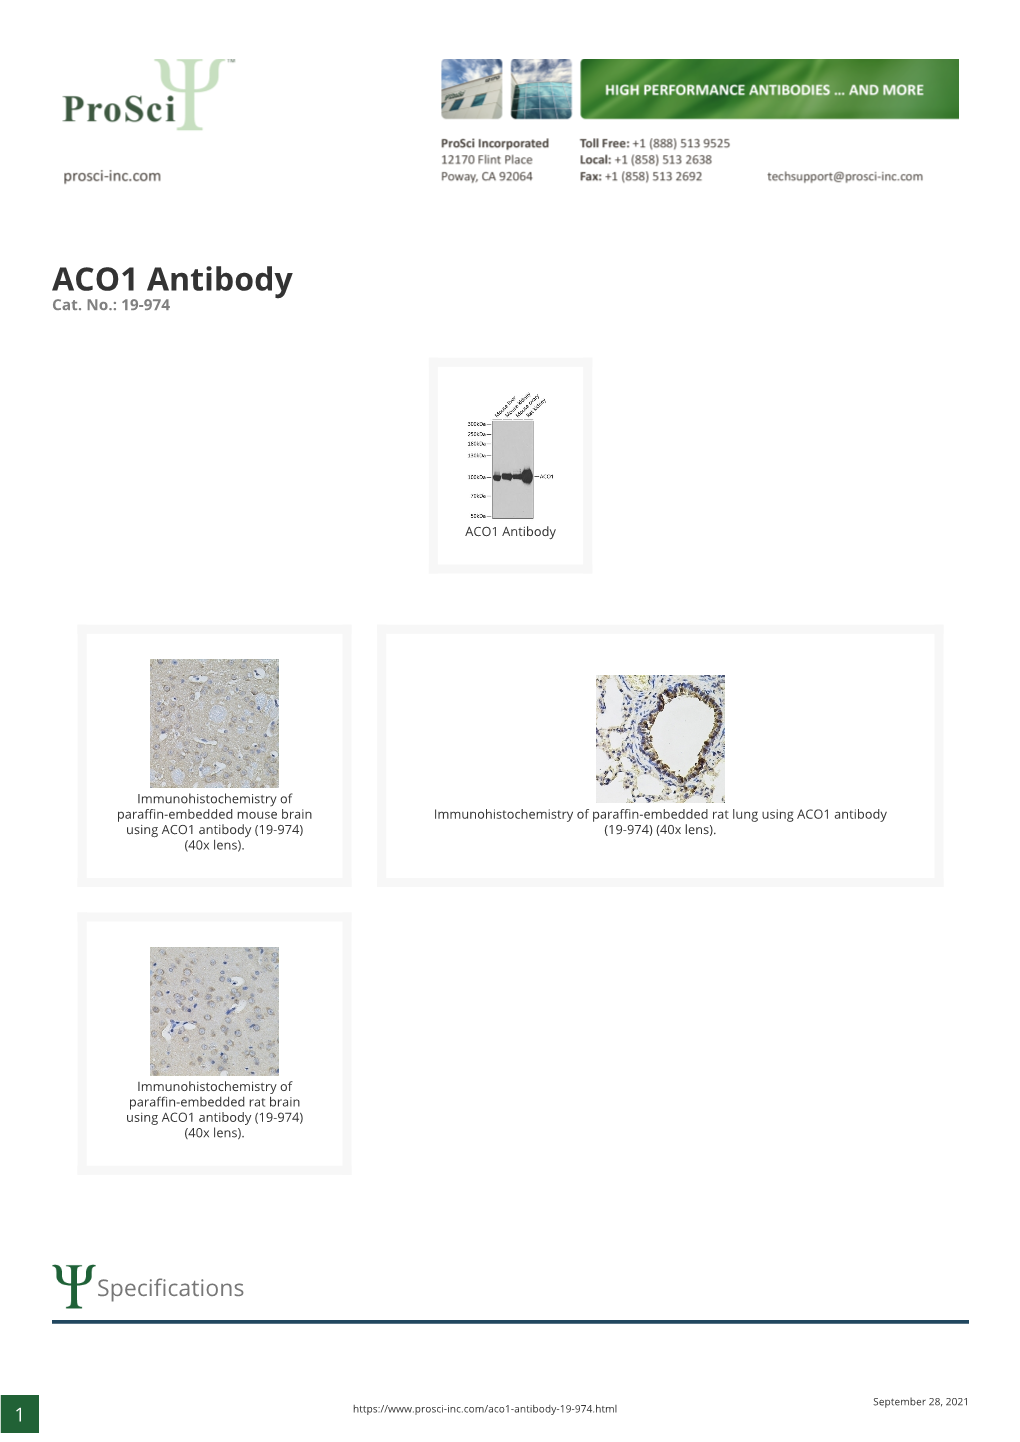 ACO1 Antibody Cat